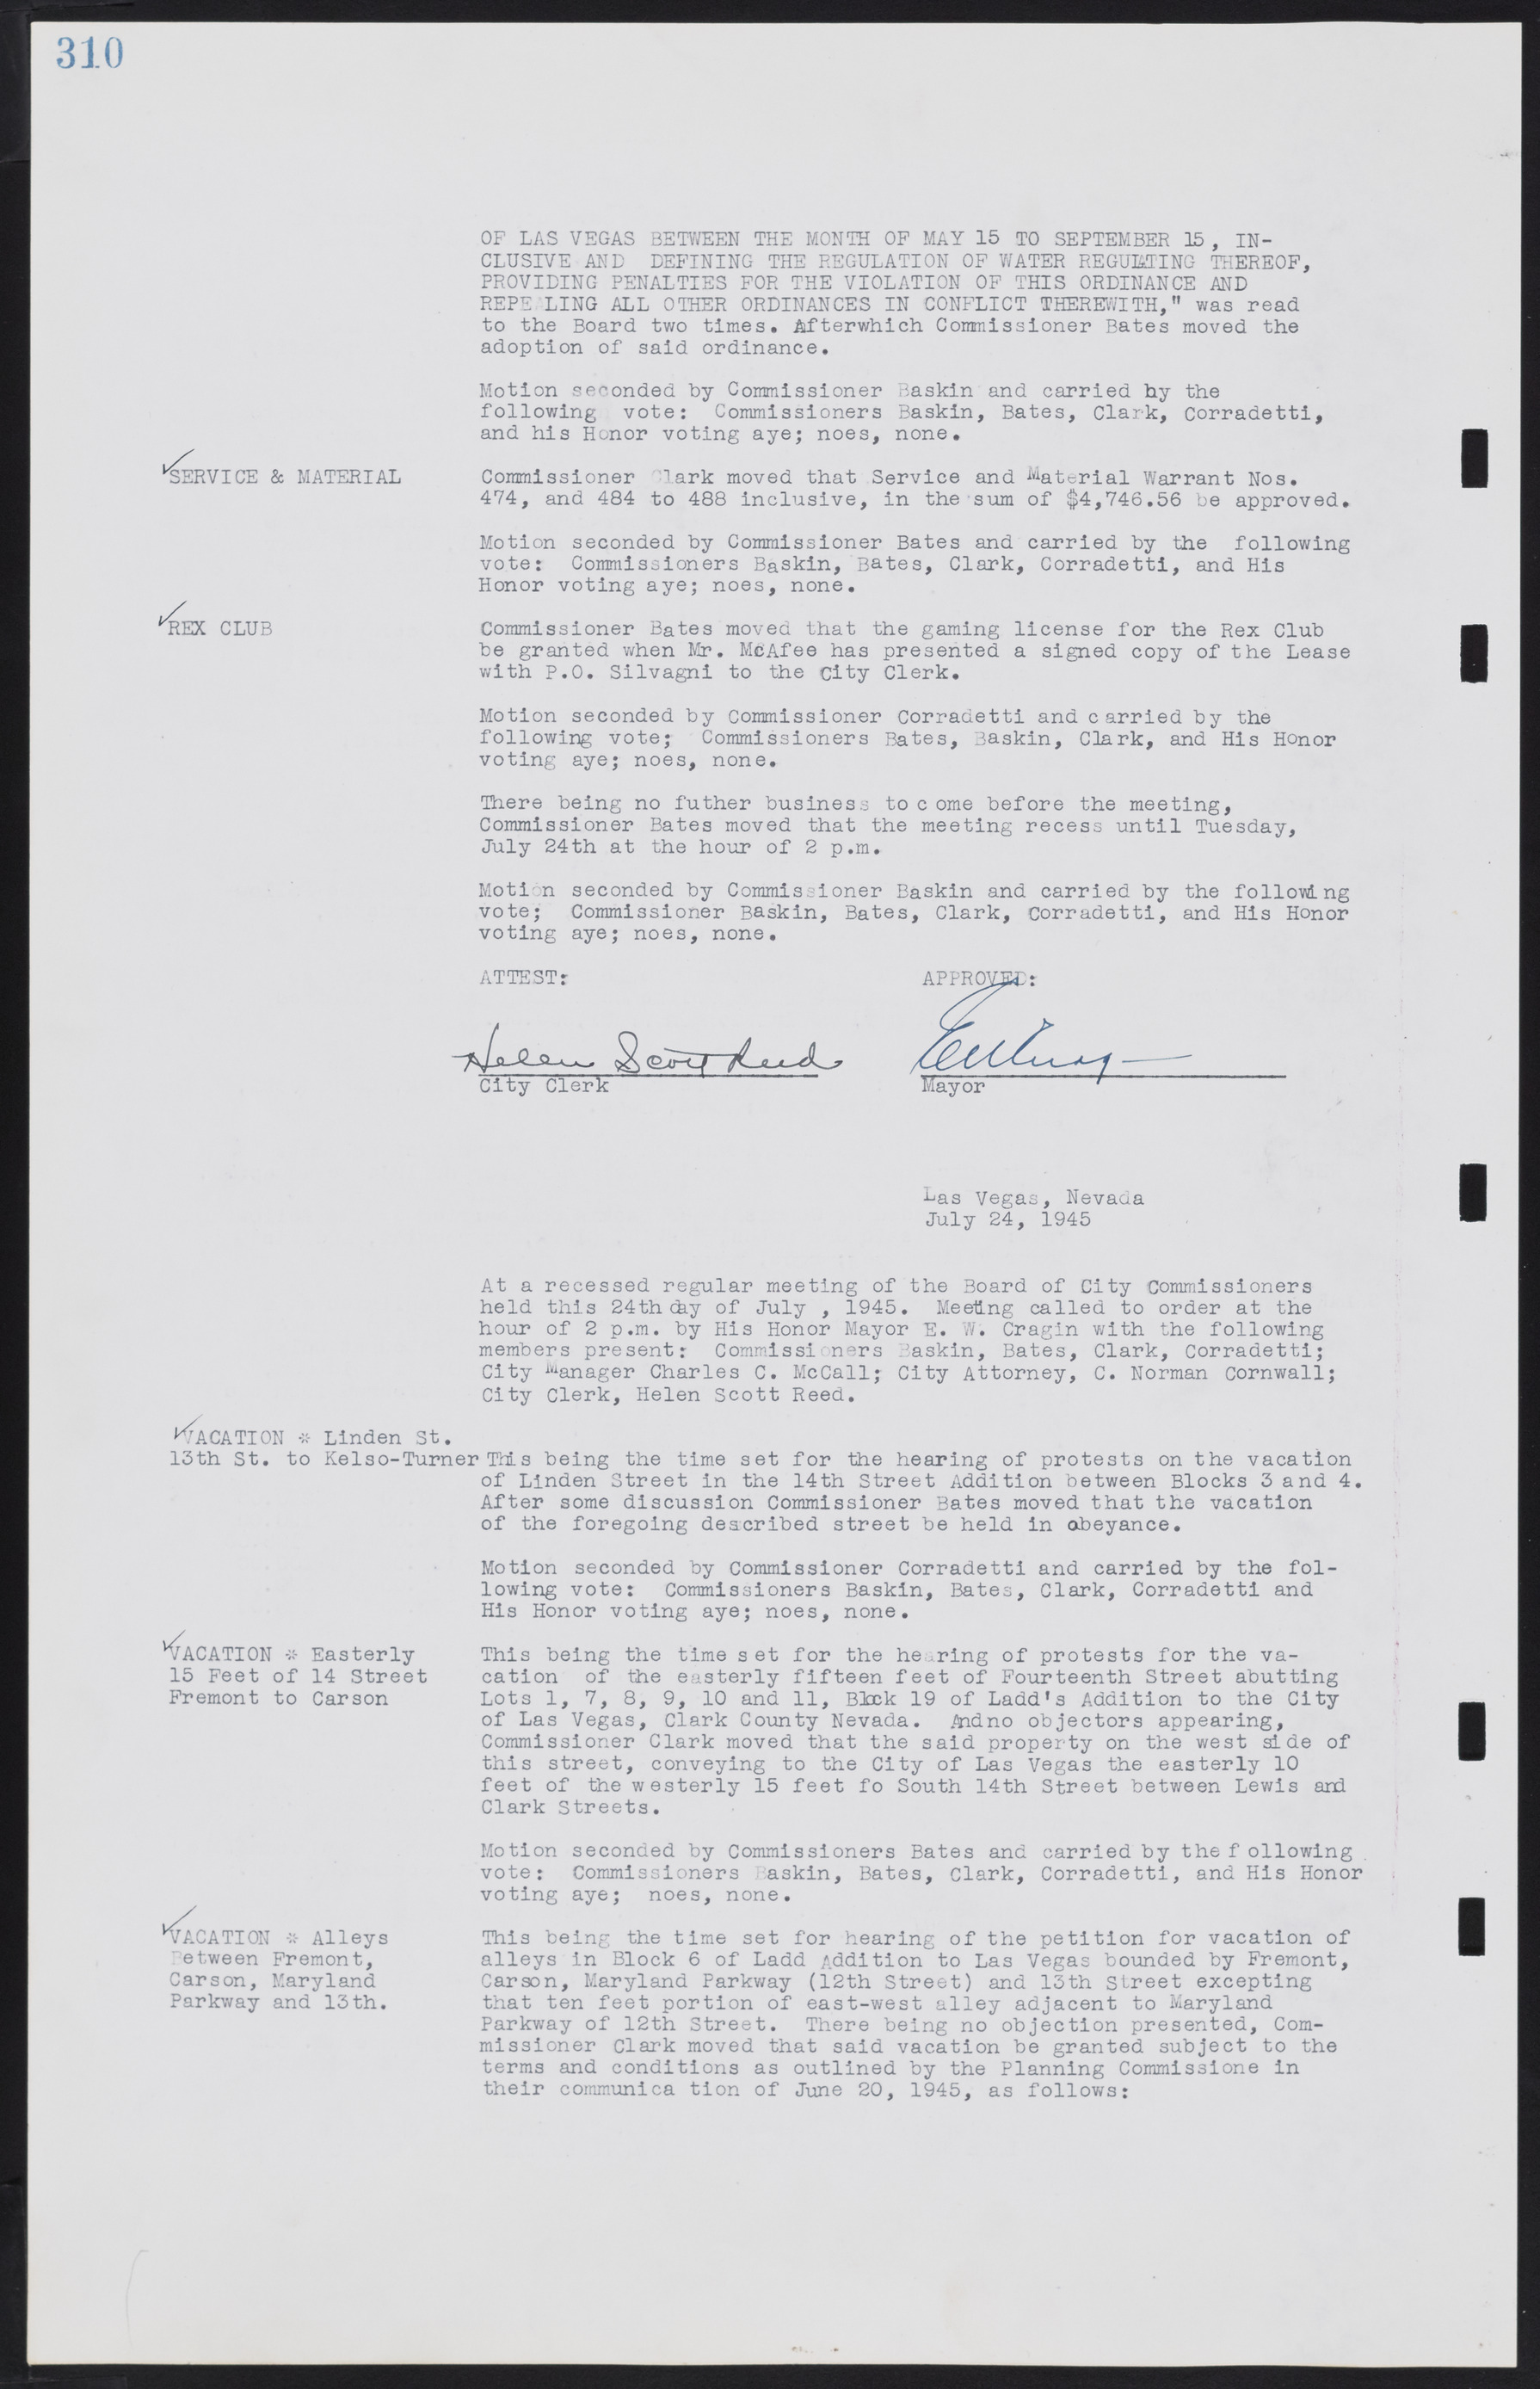 Las Vegas City Commission Minutes, August 11, 1942 to December 30, 1946, lvc000005-334